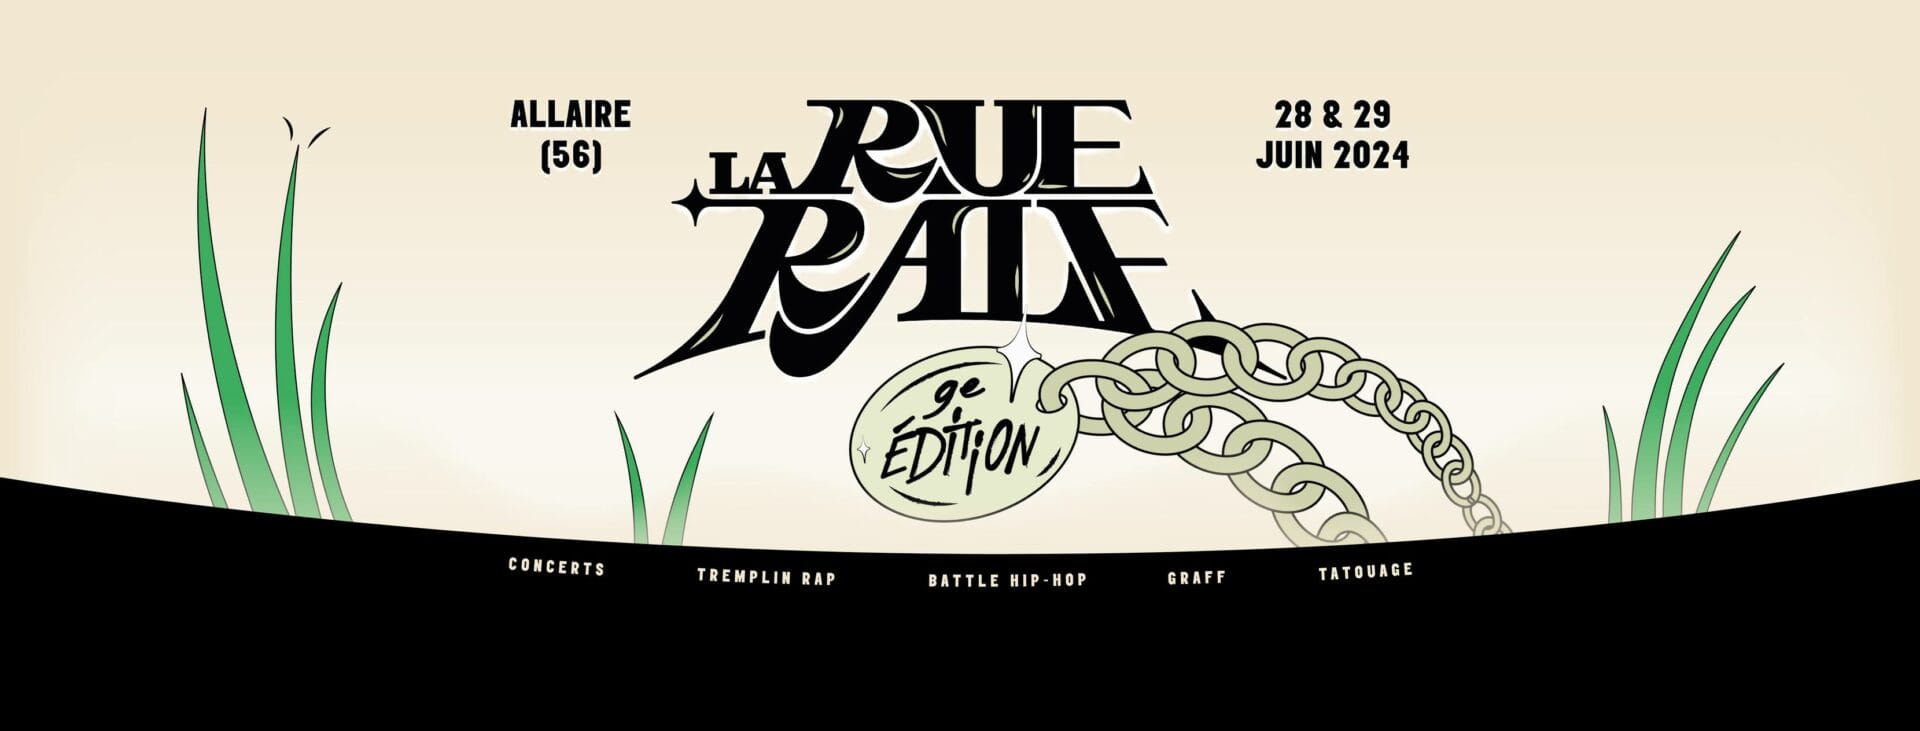 Festival La Rue Râle, 28 et 29 juin 2024 à Allaire (56)